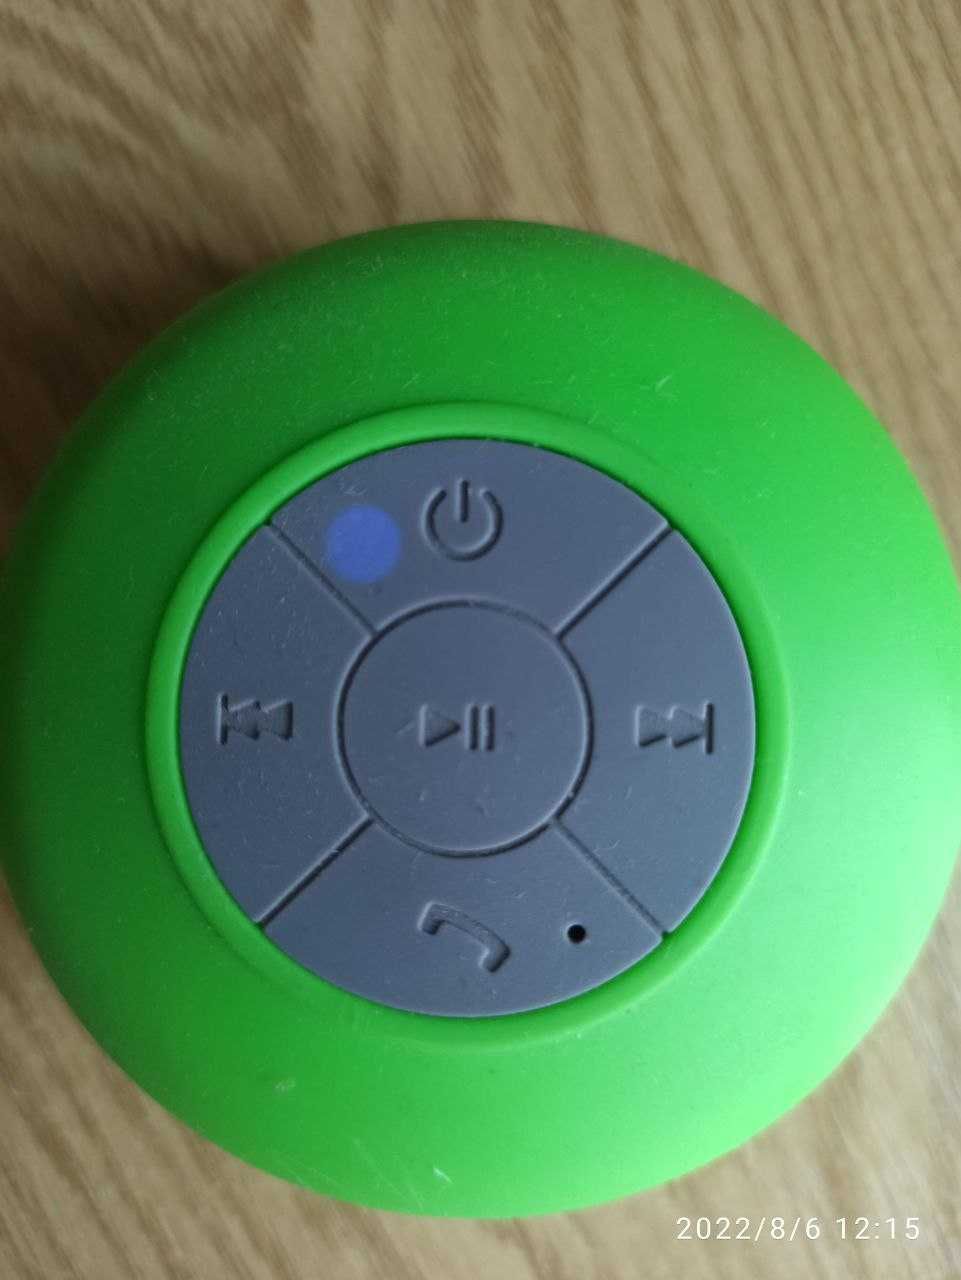 Bluetooth аудіо-колонка. зручне використання в ванні або машині